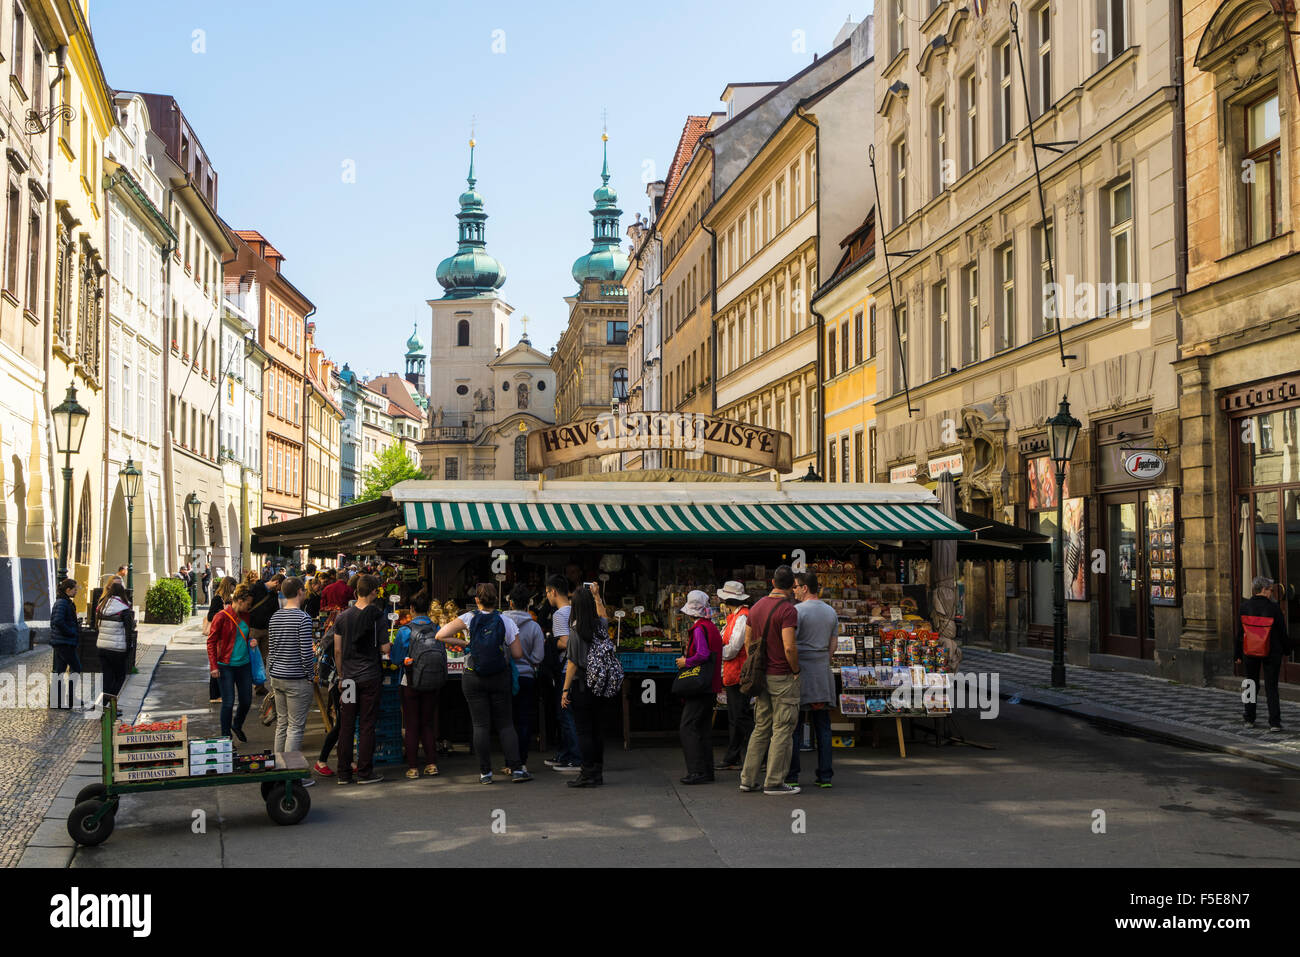 Havelsky Trziste est la vieille ville, plus grand marché en plein air en face de l'église de Havel, Prague, République Tchèque, Europe Banque D'Images